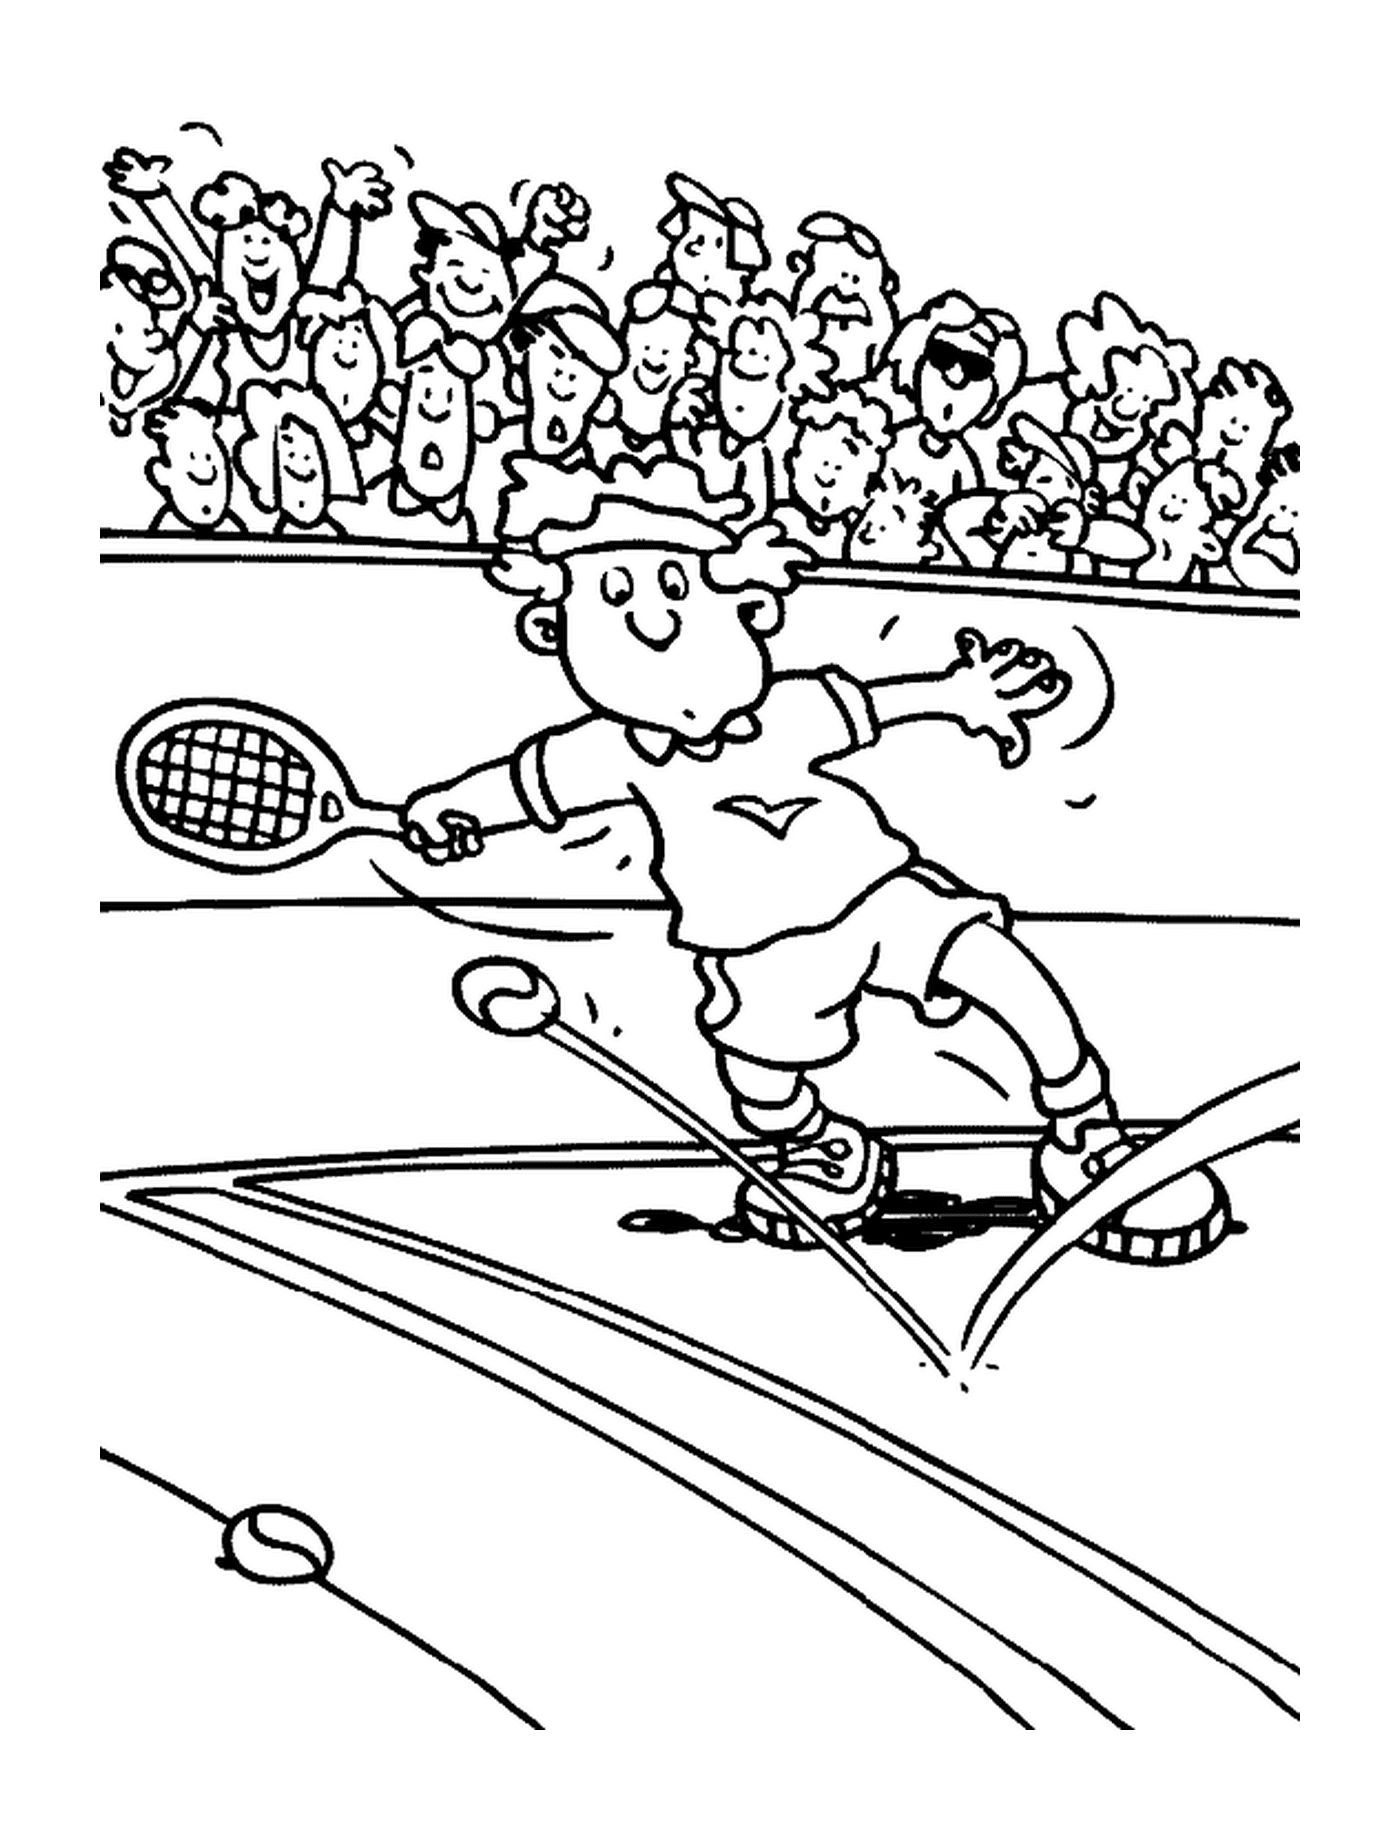  Un uomo in azione nel tennis 